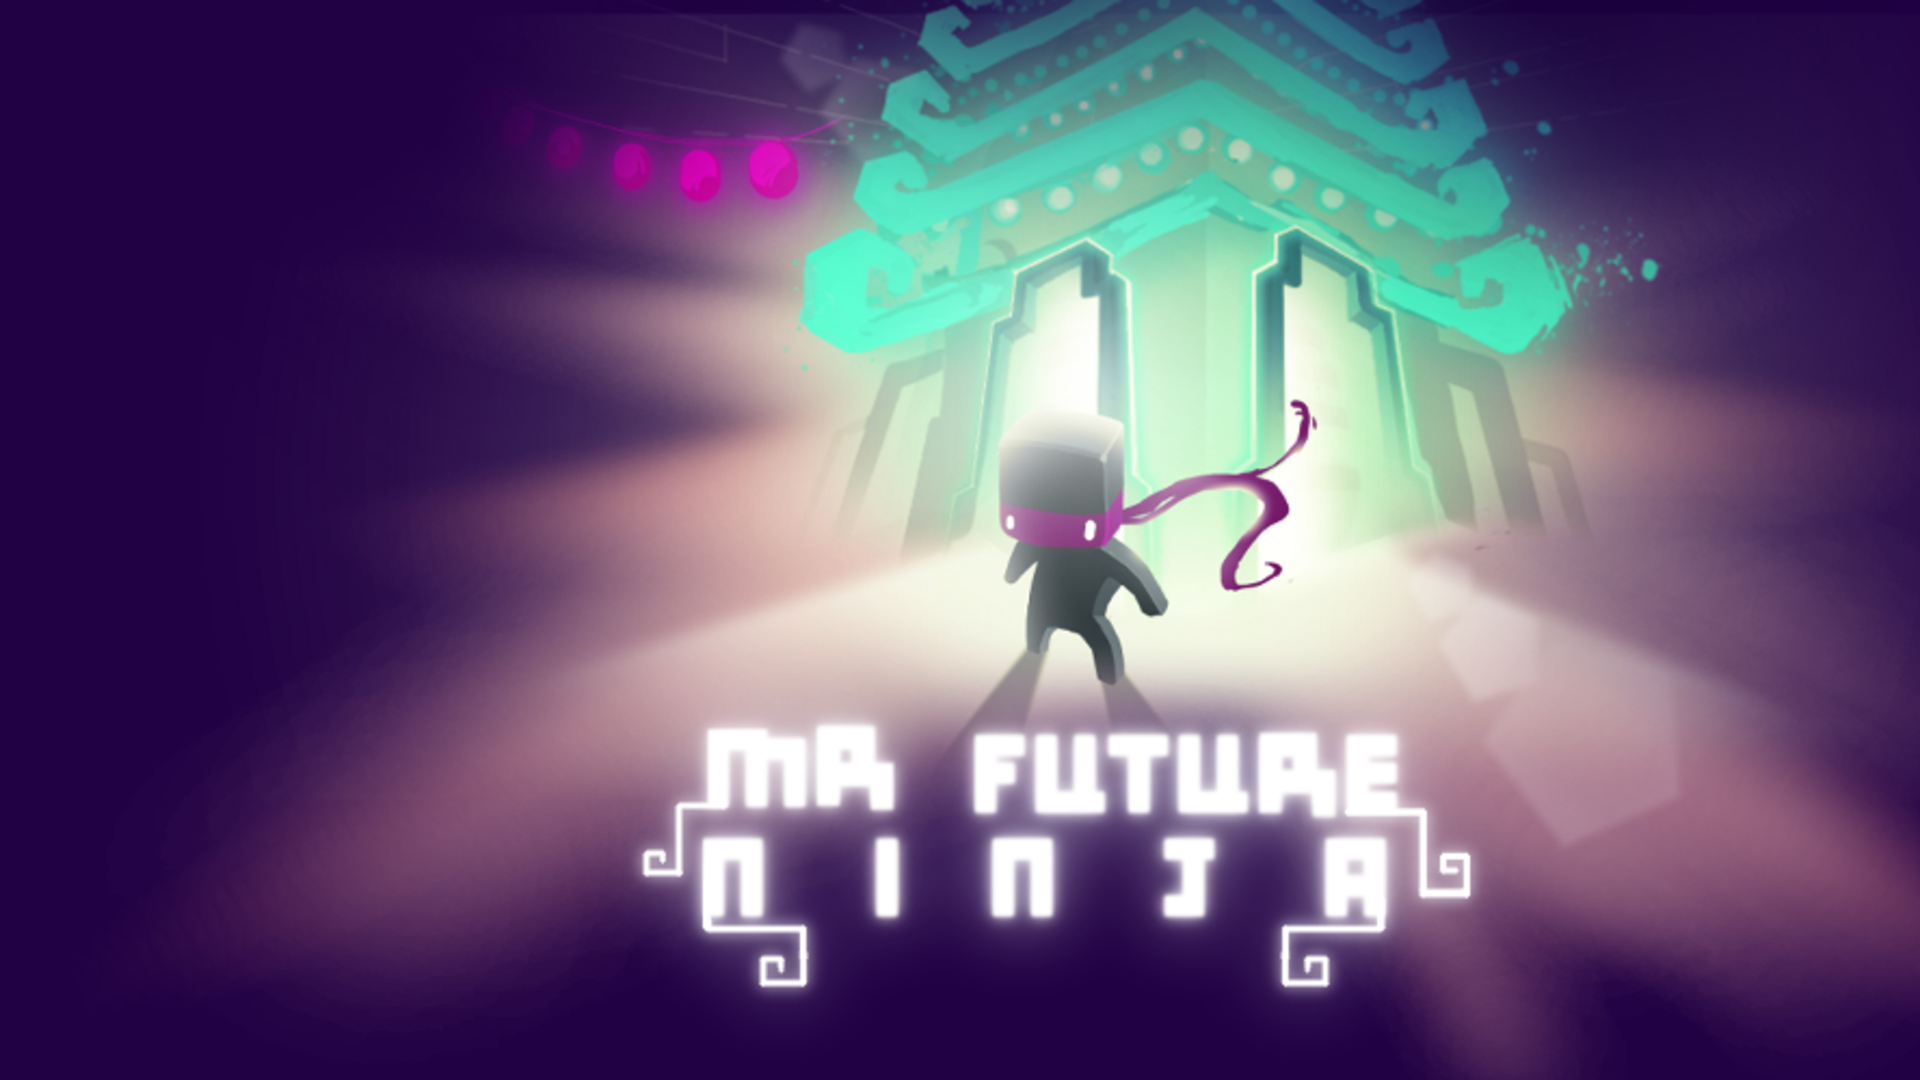 Banner of futuro ninja 